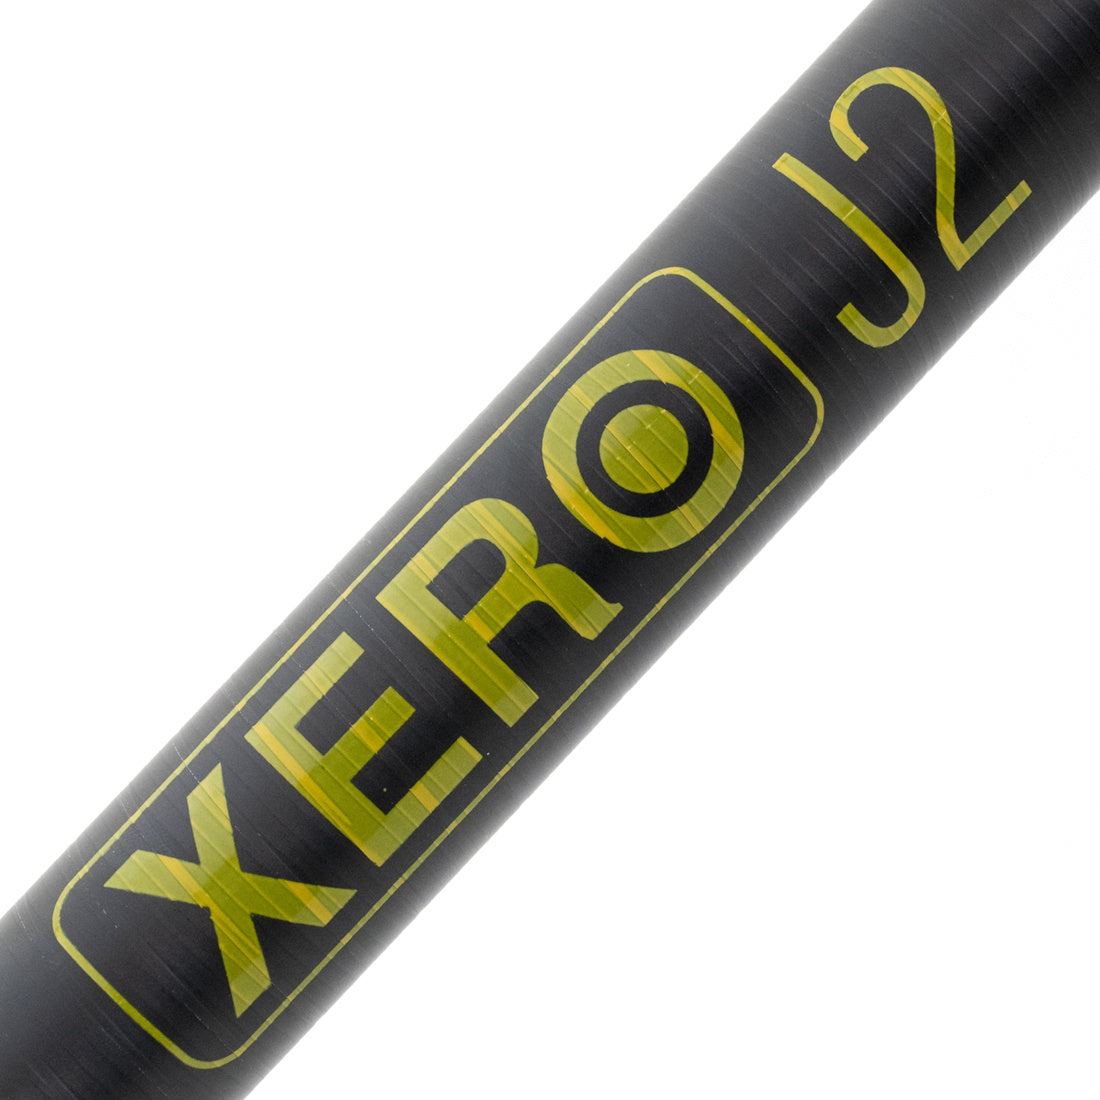 XERO J2 Pole, Extension Poles